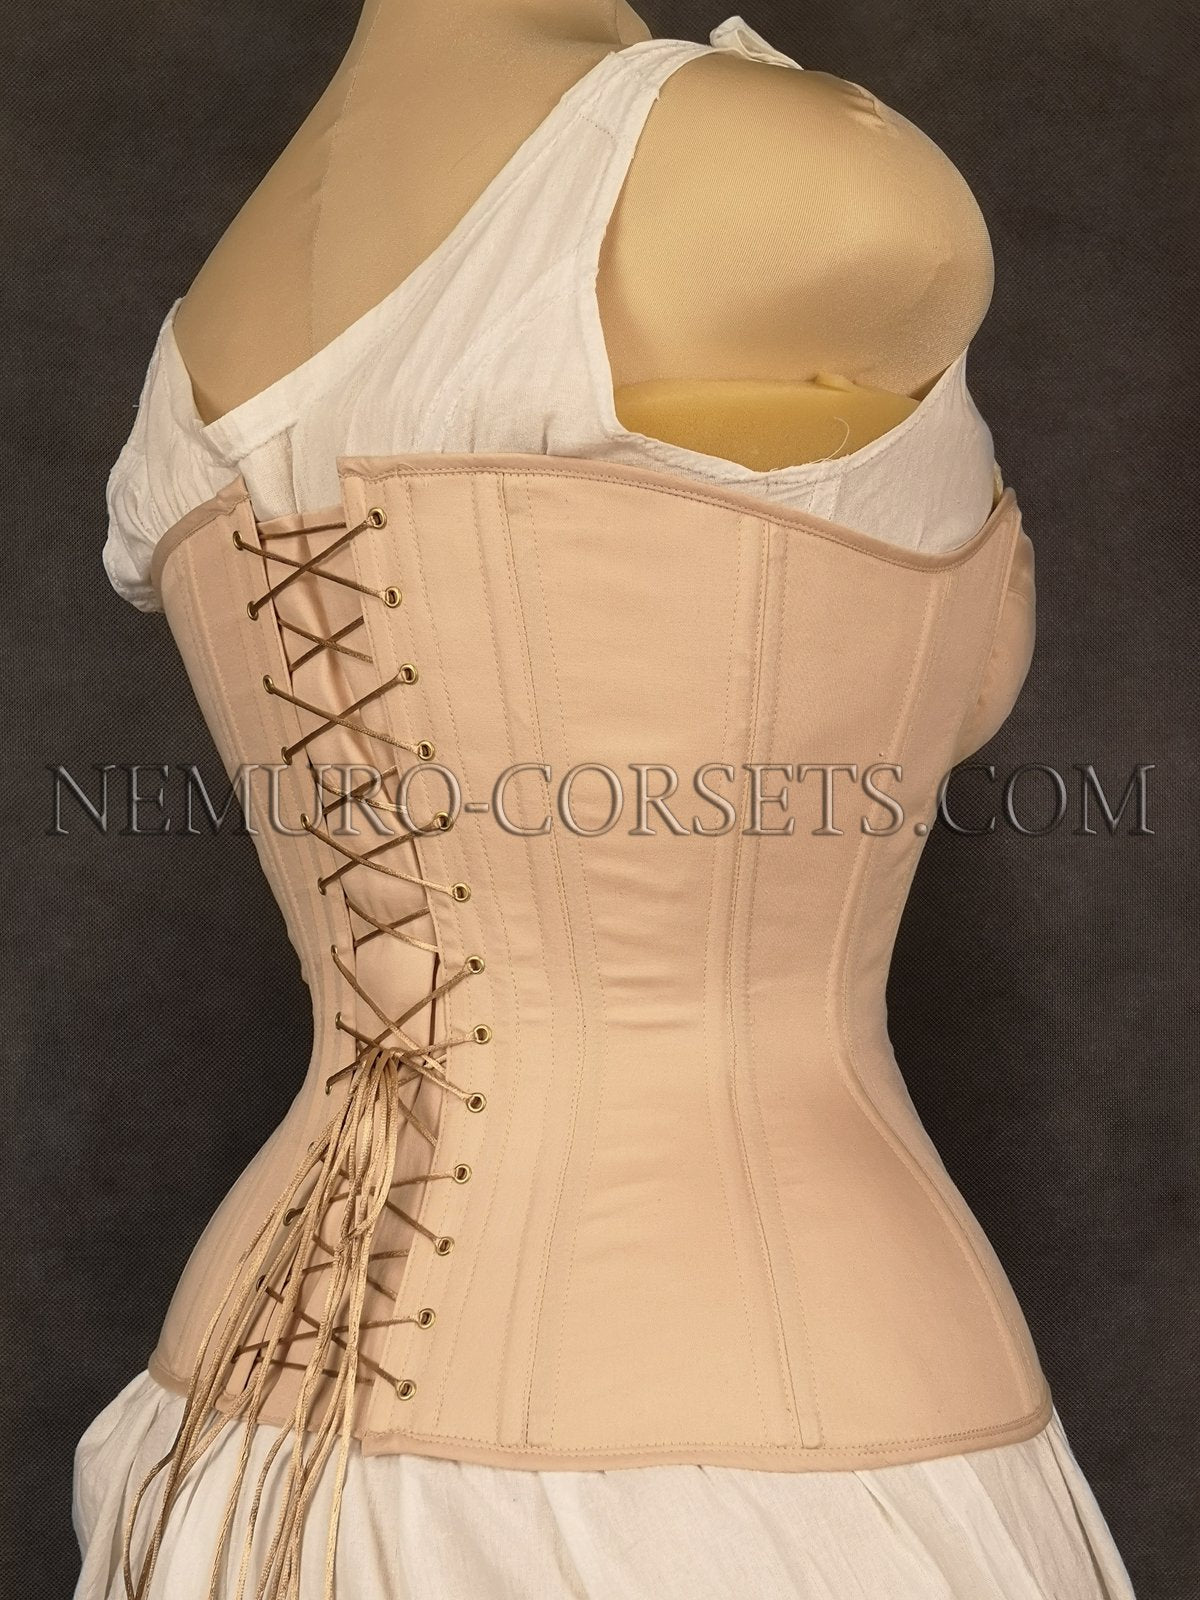 https://nemuro-corsets.com/cdn/shop/products/IMG_20200216_202607-2_1024x1024@2x.jpg?v=1610511663